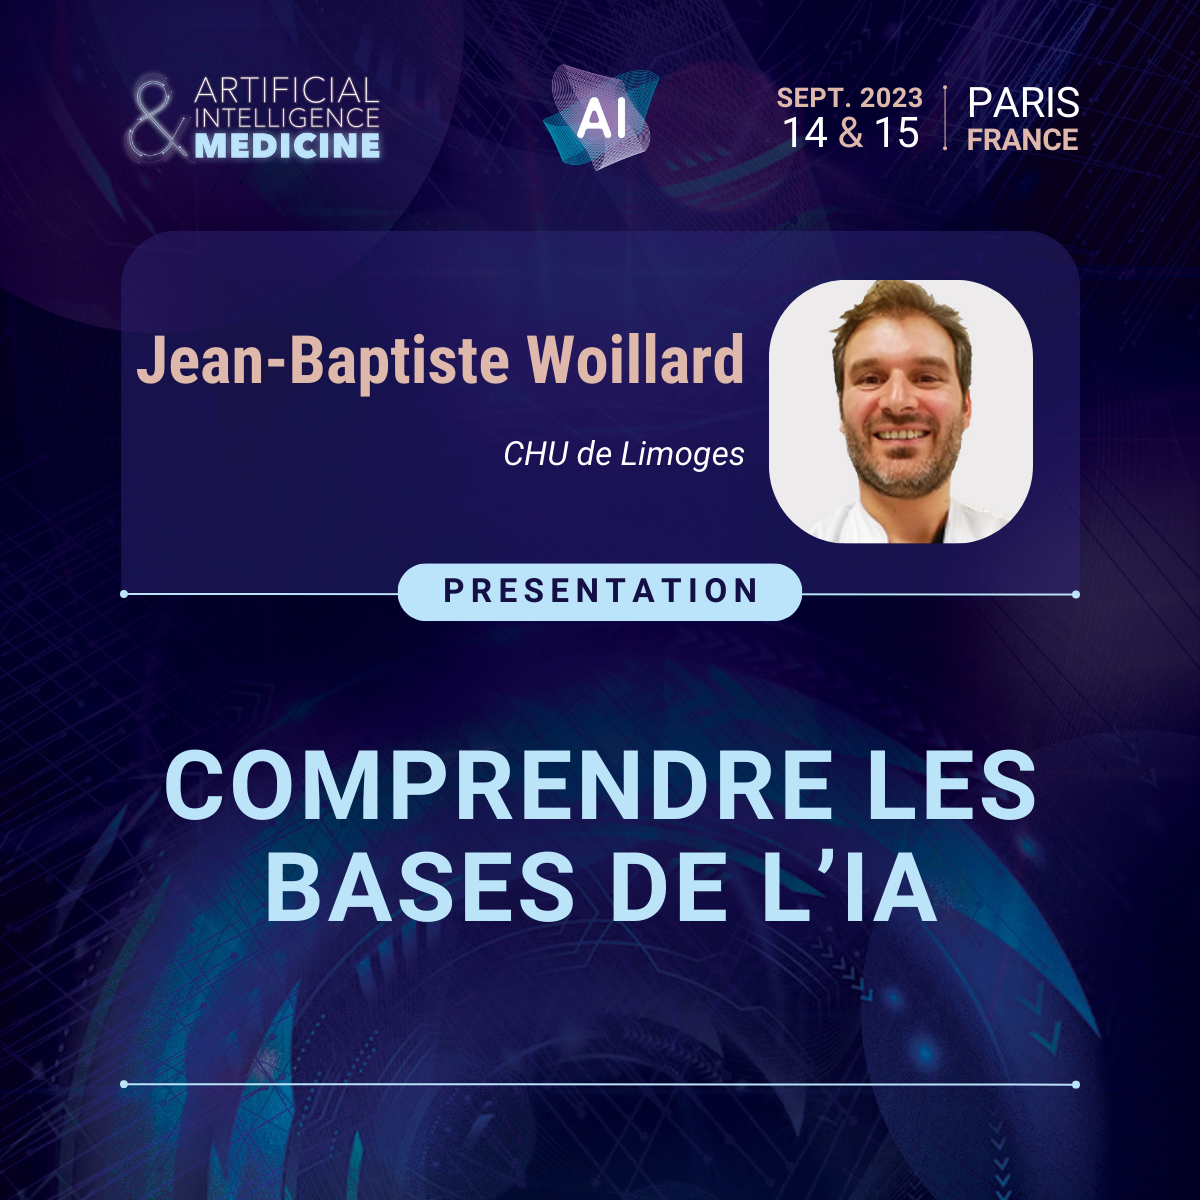  Le Professeur Jean-Baptiste WOILLARD au cœur de la Deuxième Réunion sur l’Intelligence Artificielle en Néphrologie à Paris les 14 et 15 septembre 2023